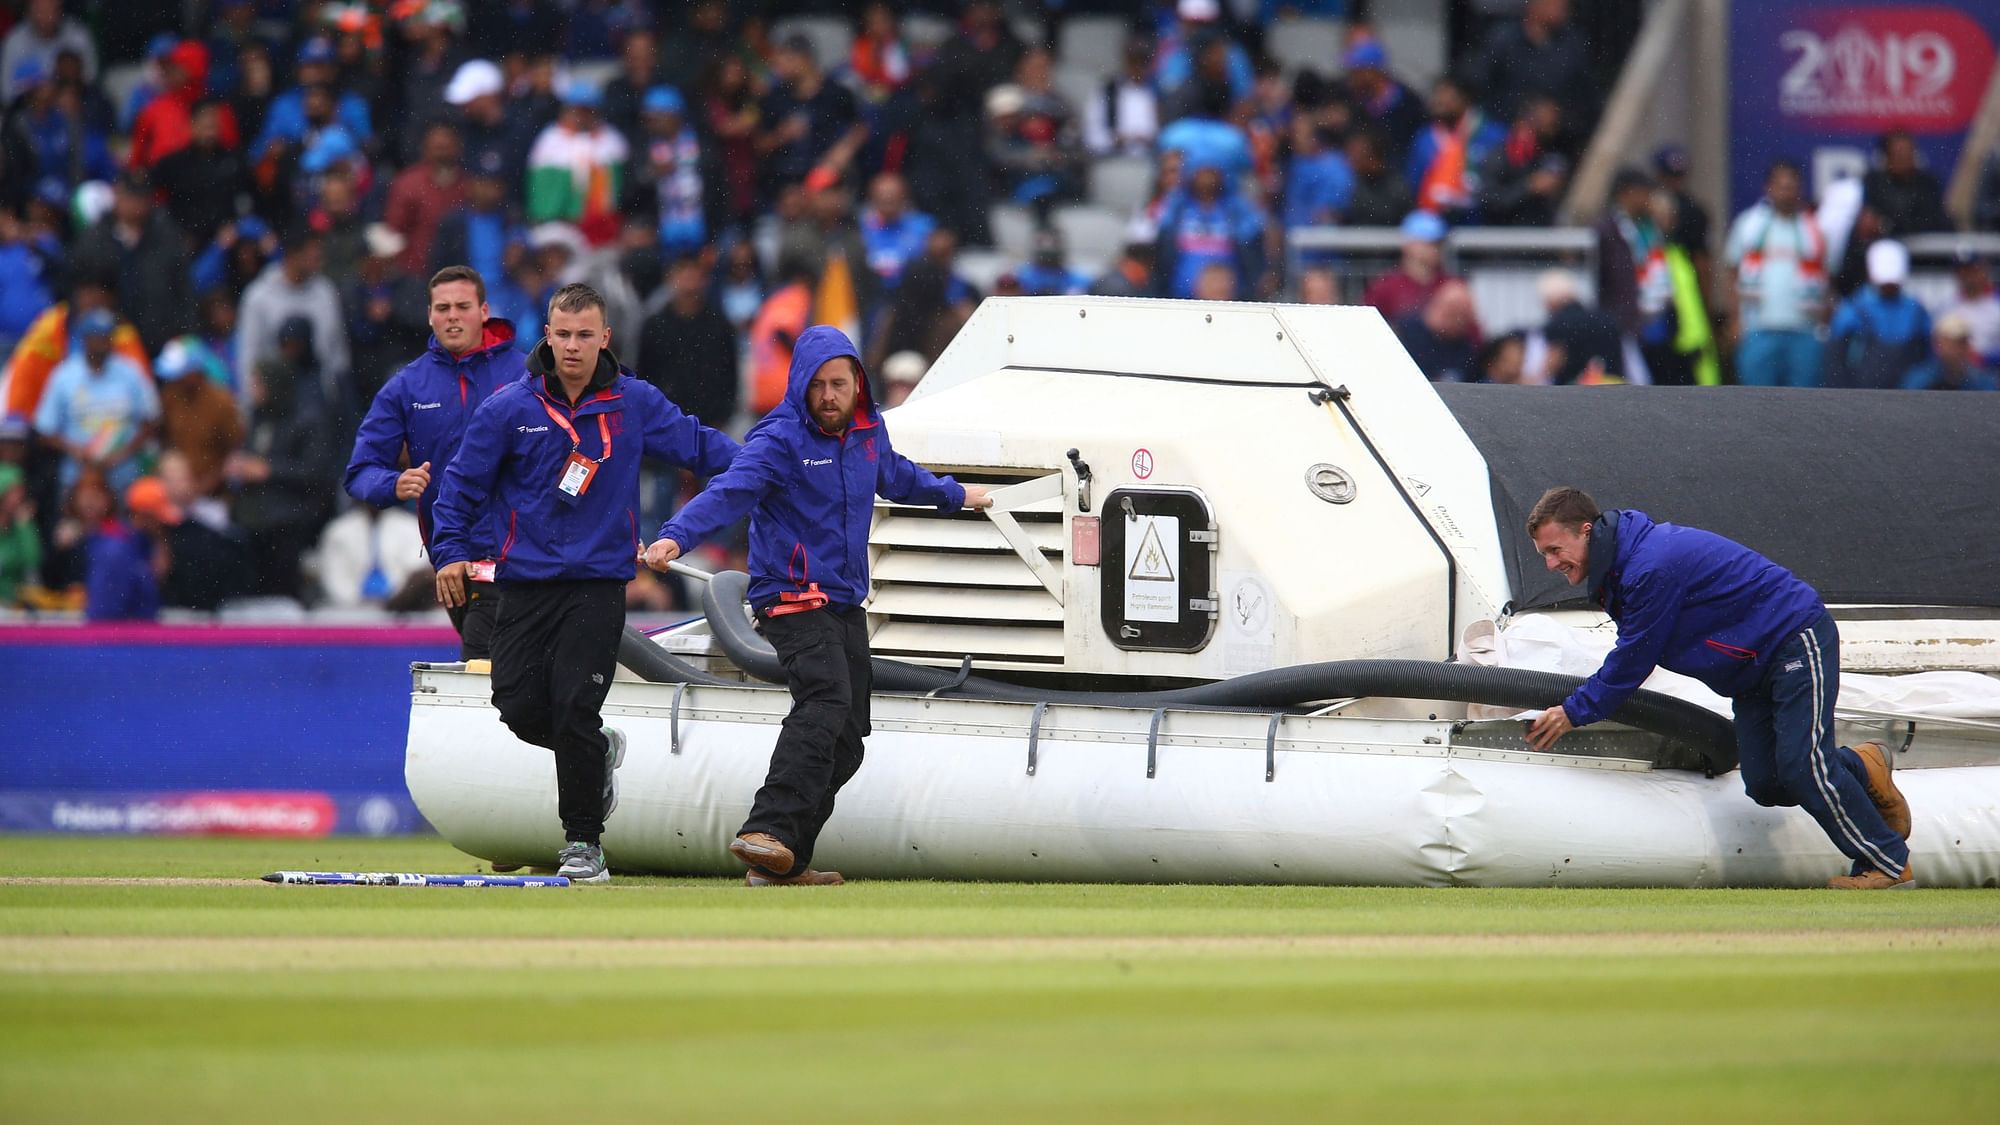 न्यूजीलैंड की पारी के 47वें ओवर में बारिश के कारण मैच रोकना पड़ा